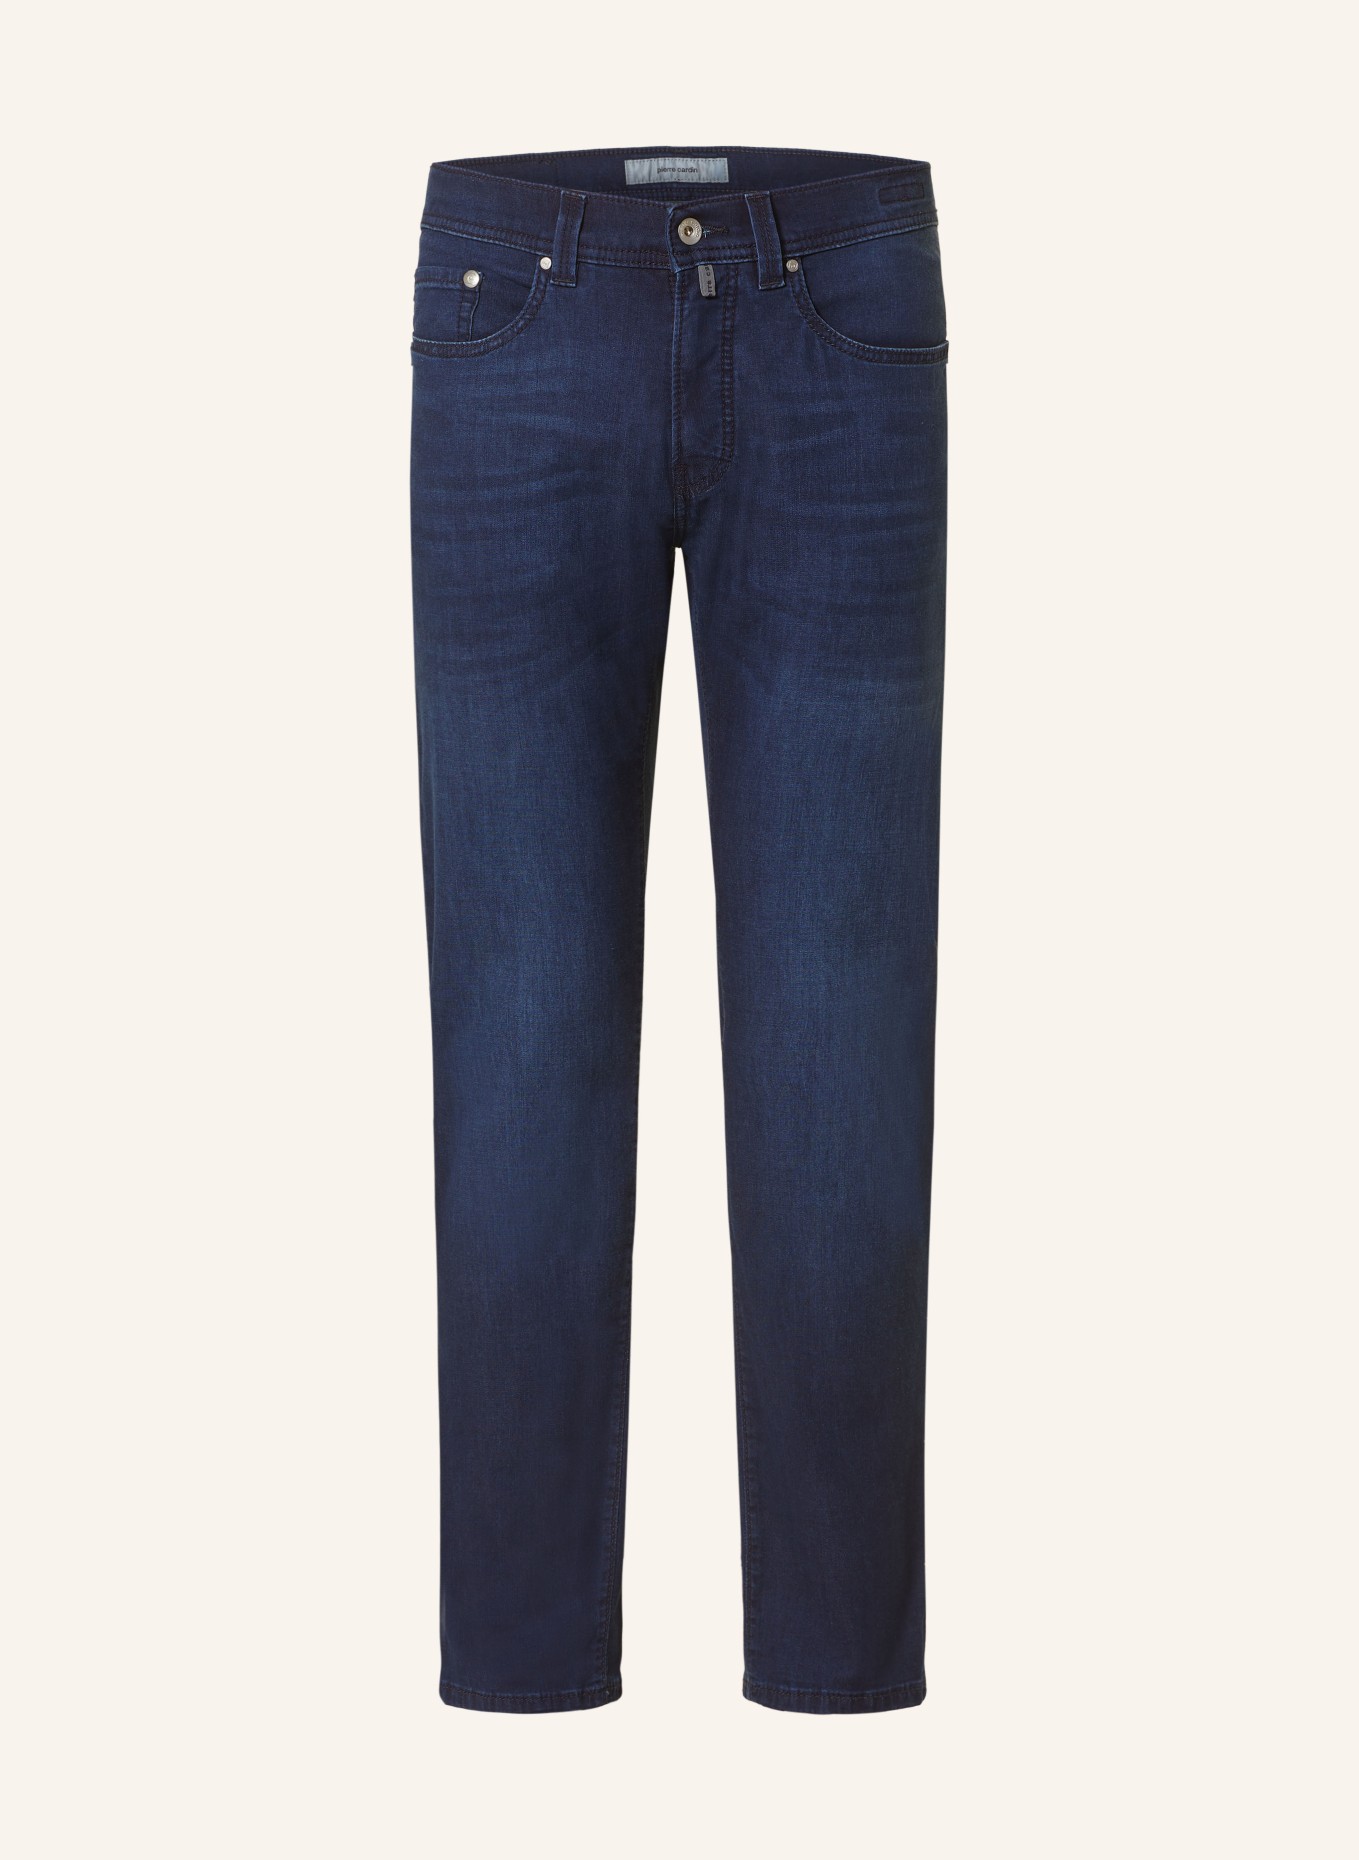 pierre cardin Jeans LYON Slim Fit, Farbe: 6814 dark blue used buffies (Bild 1)